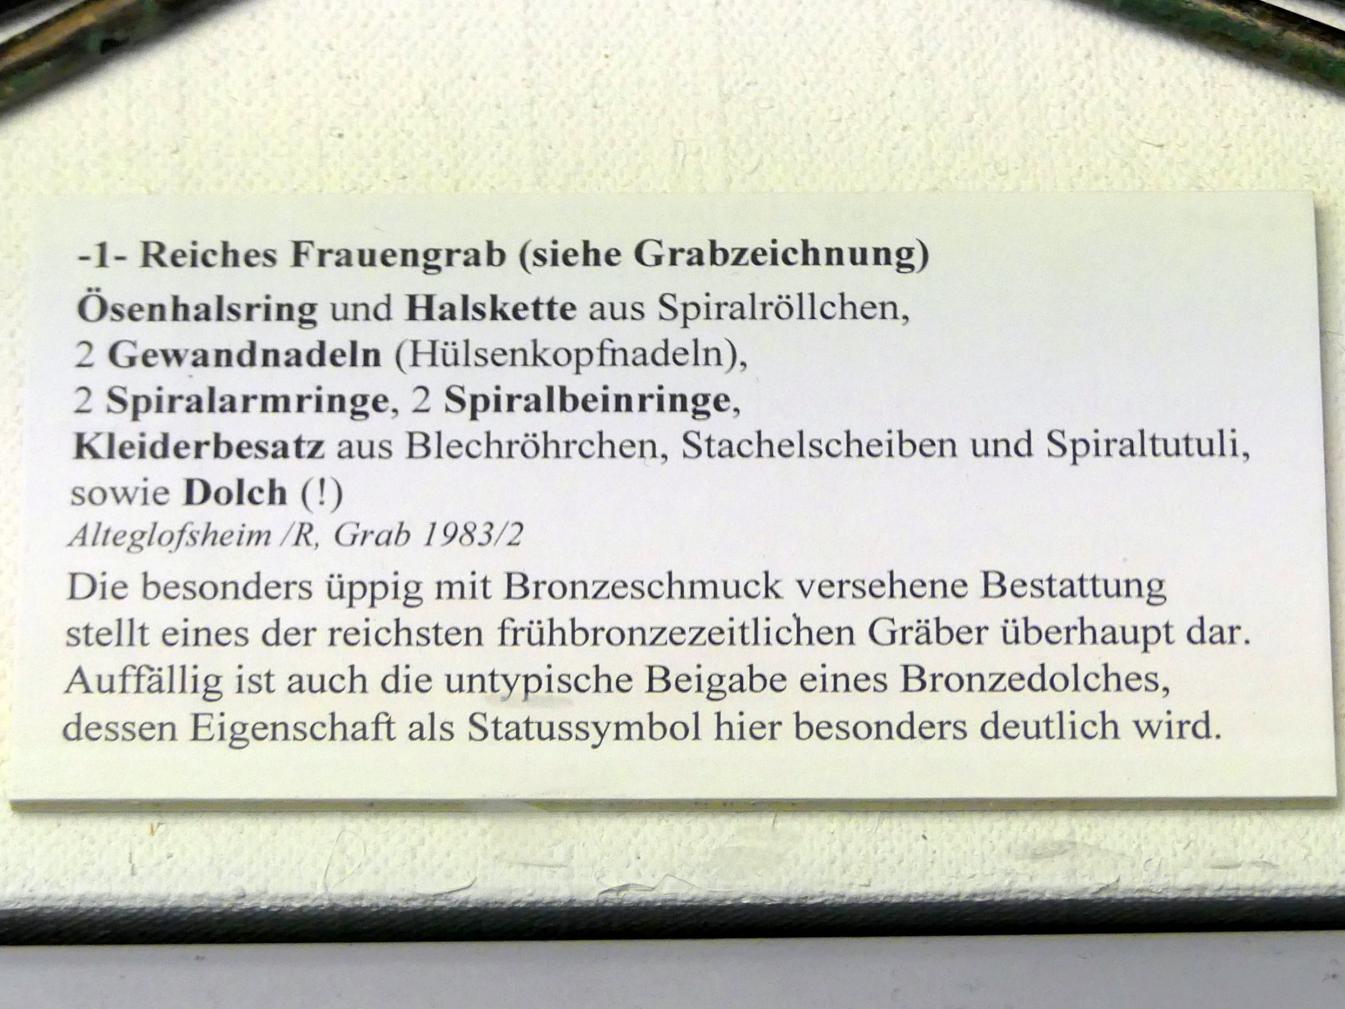 2 Stachelscheiben, Frühe Bronzezeit, 3365 - 1200 v. Chr., Bild 2/2